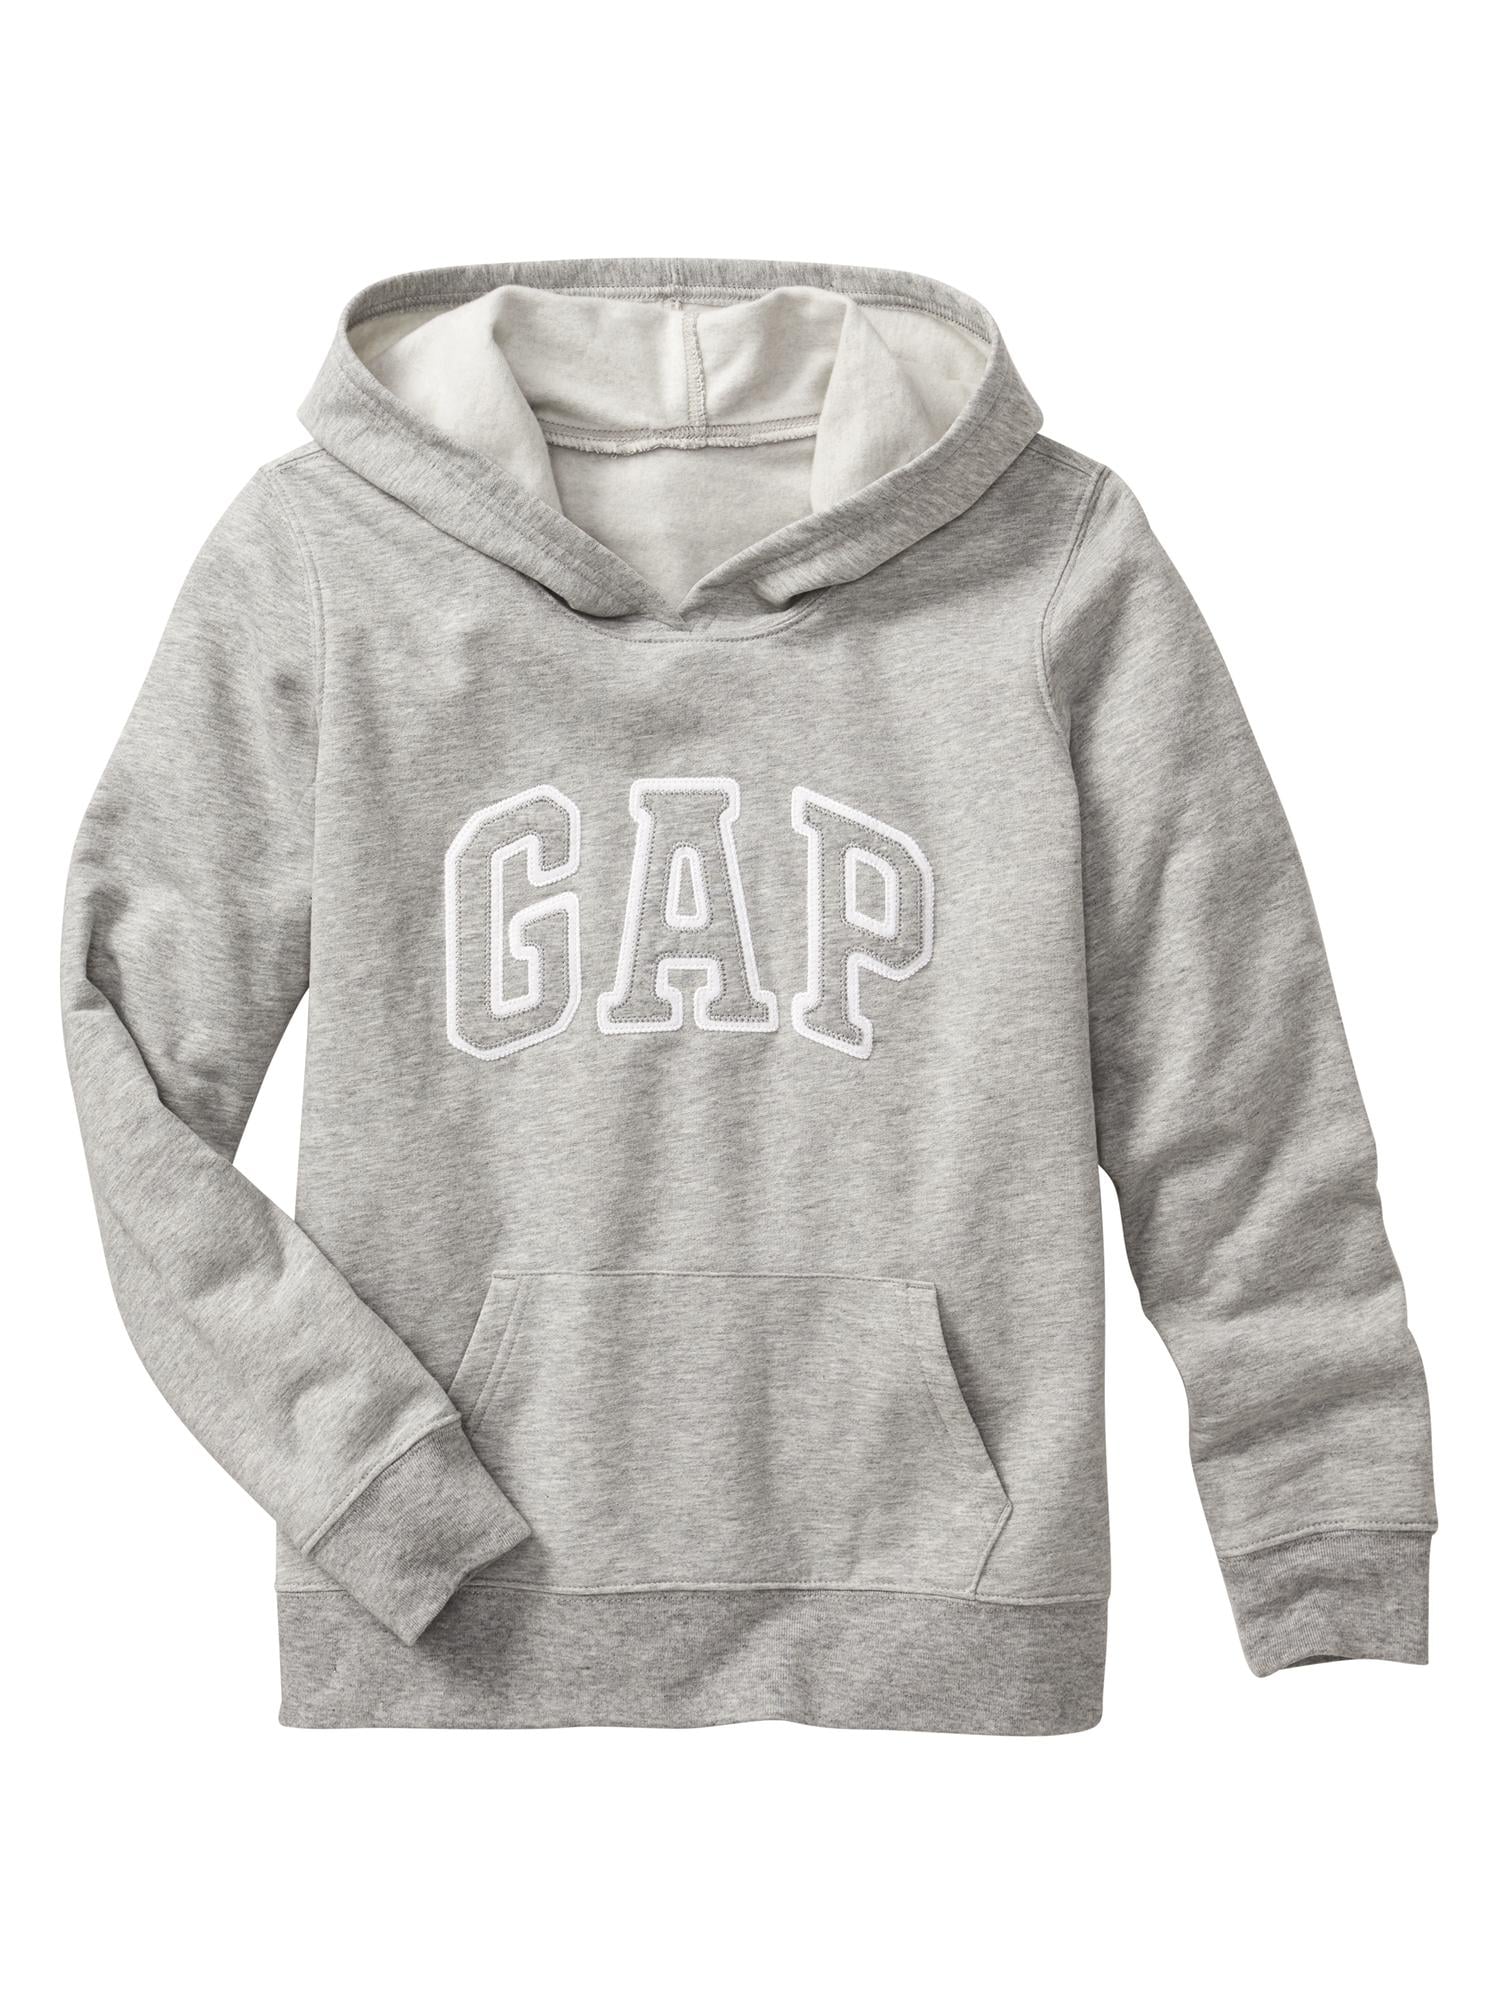 grey gap jacket